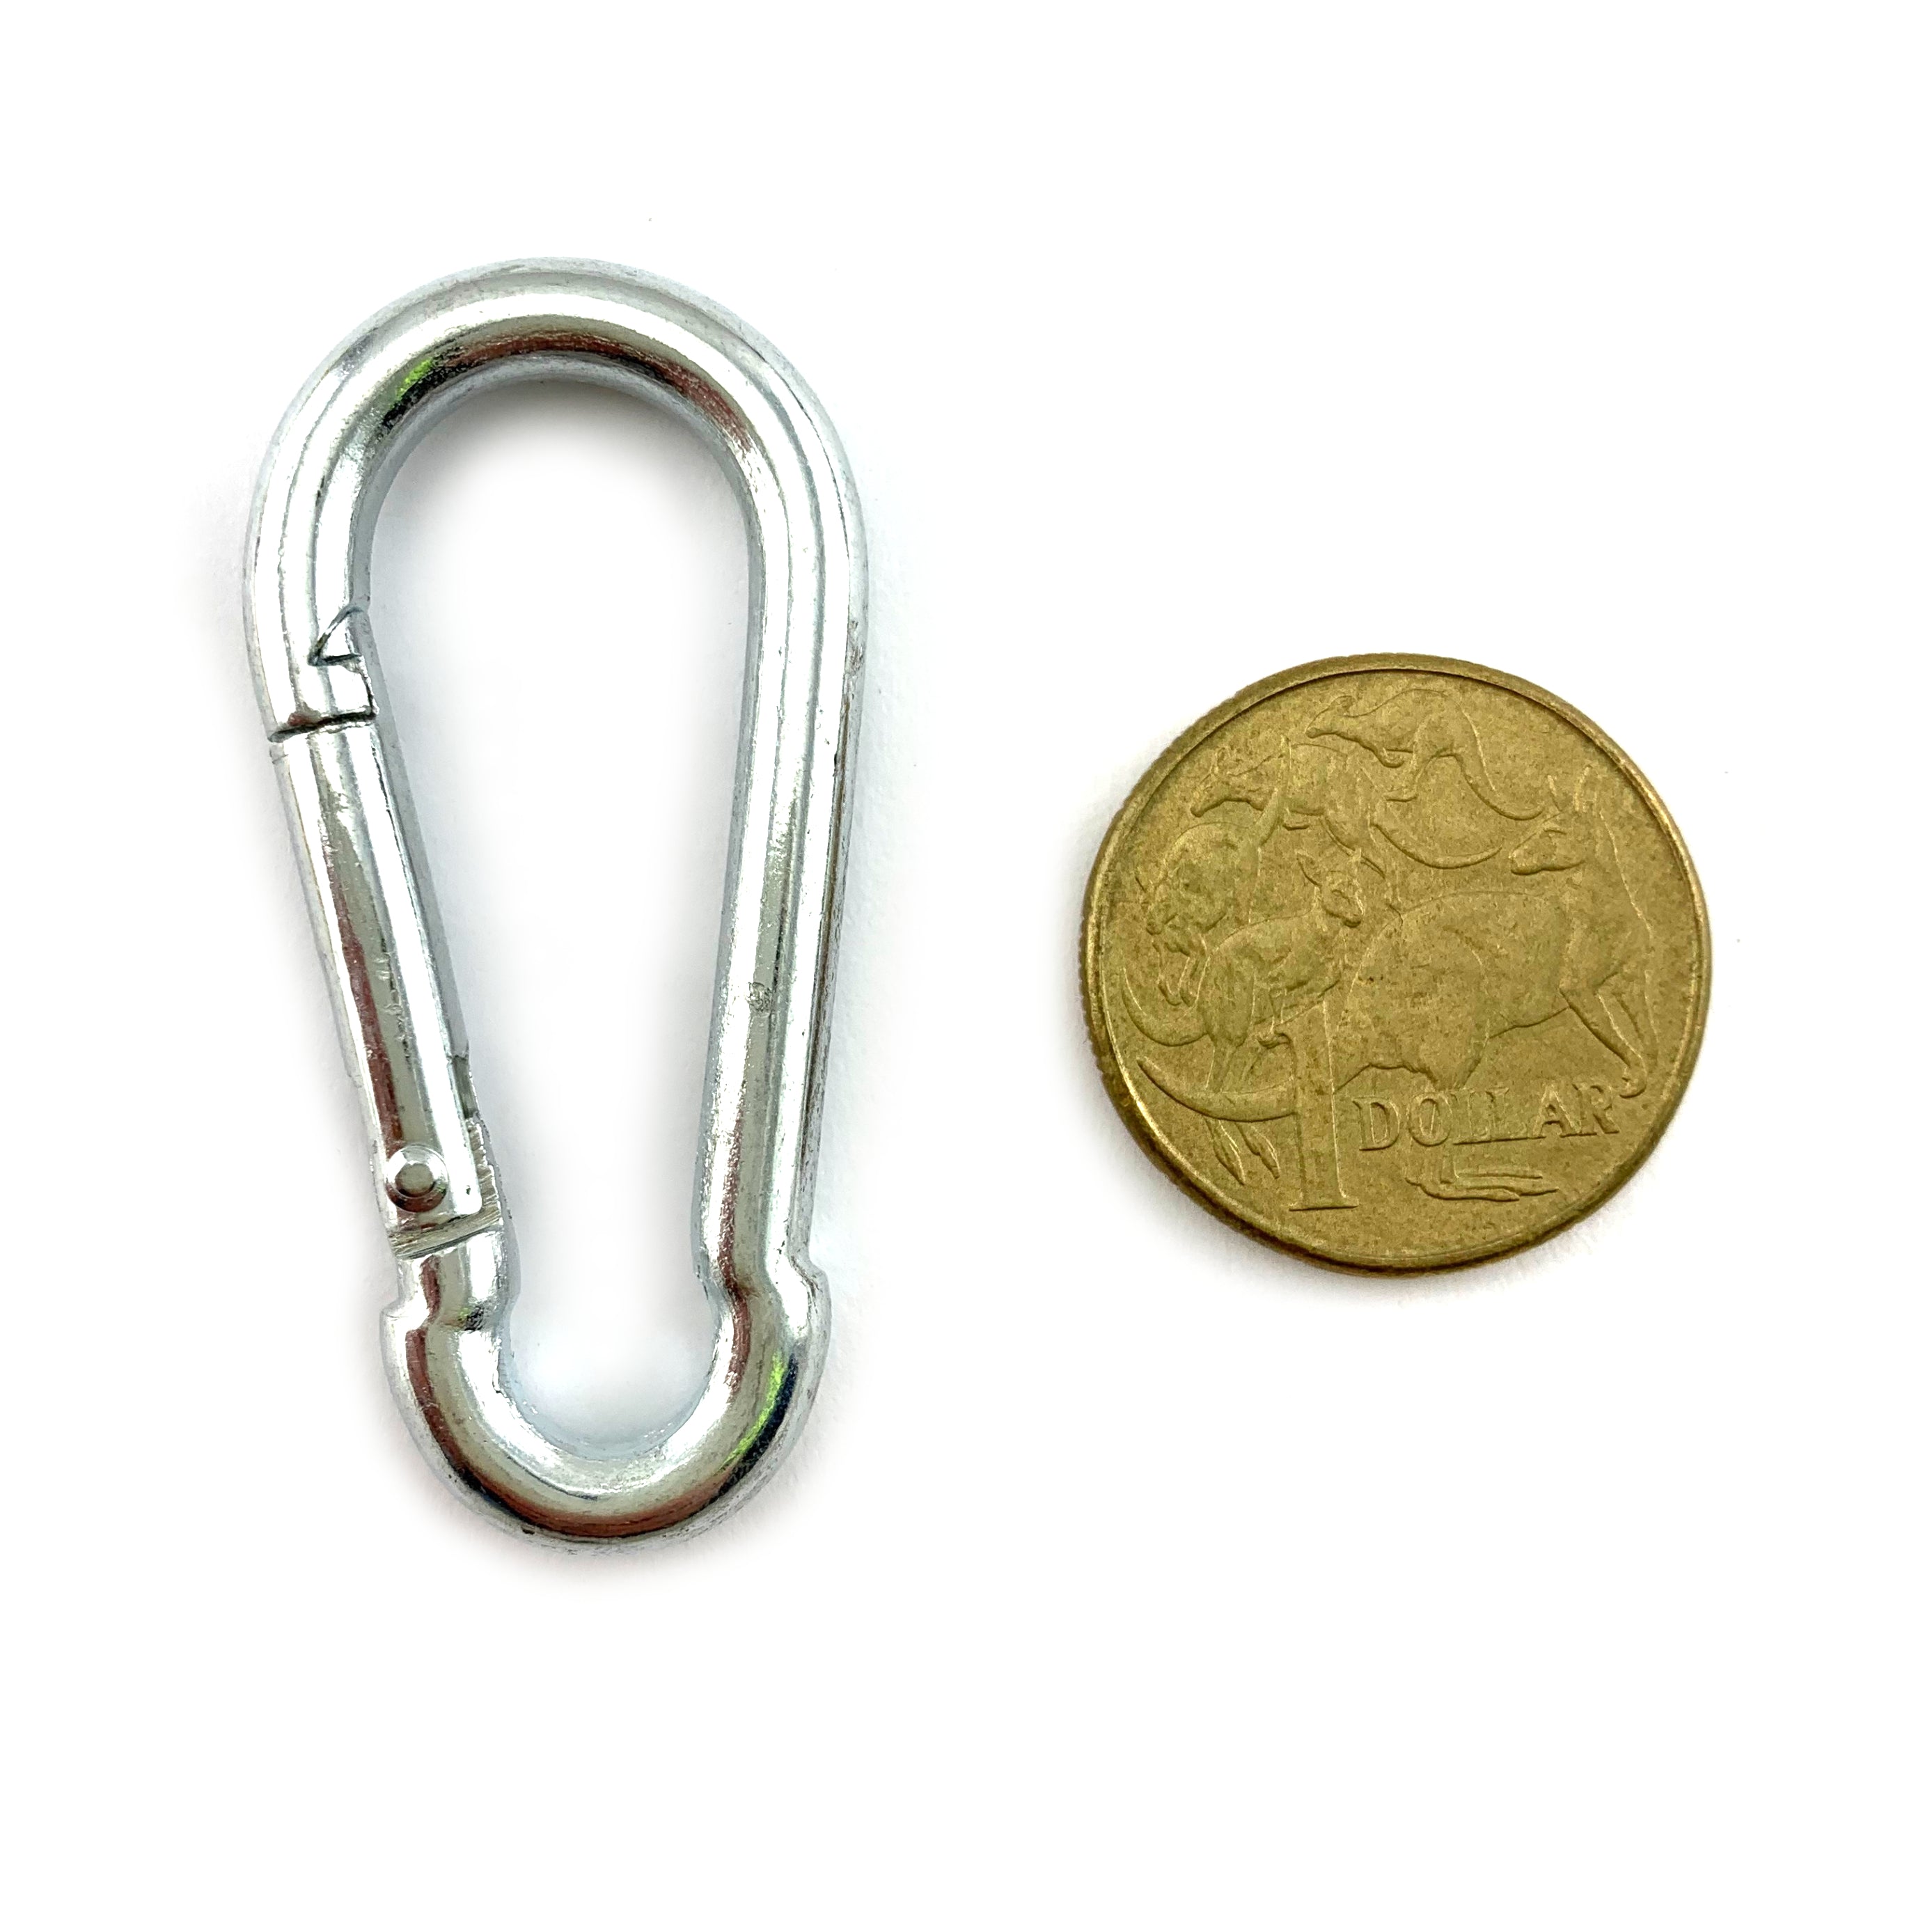 Snap hook in zinc plated steel, size 5mm. Australia